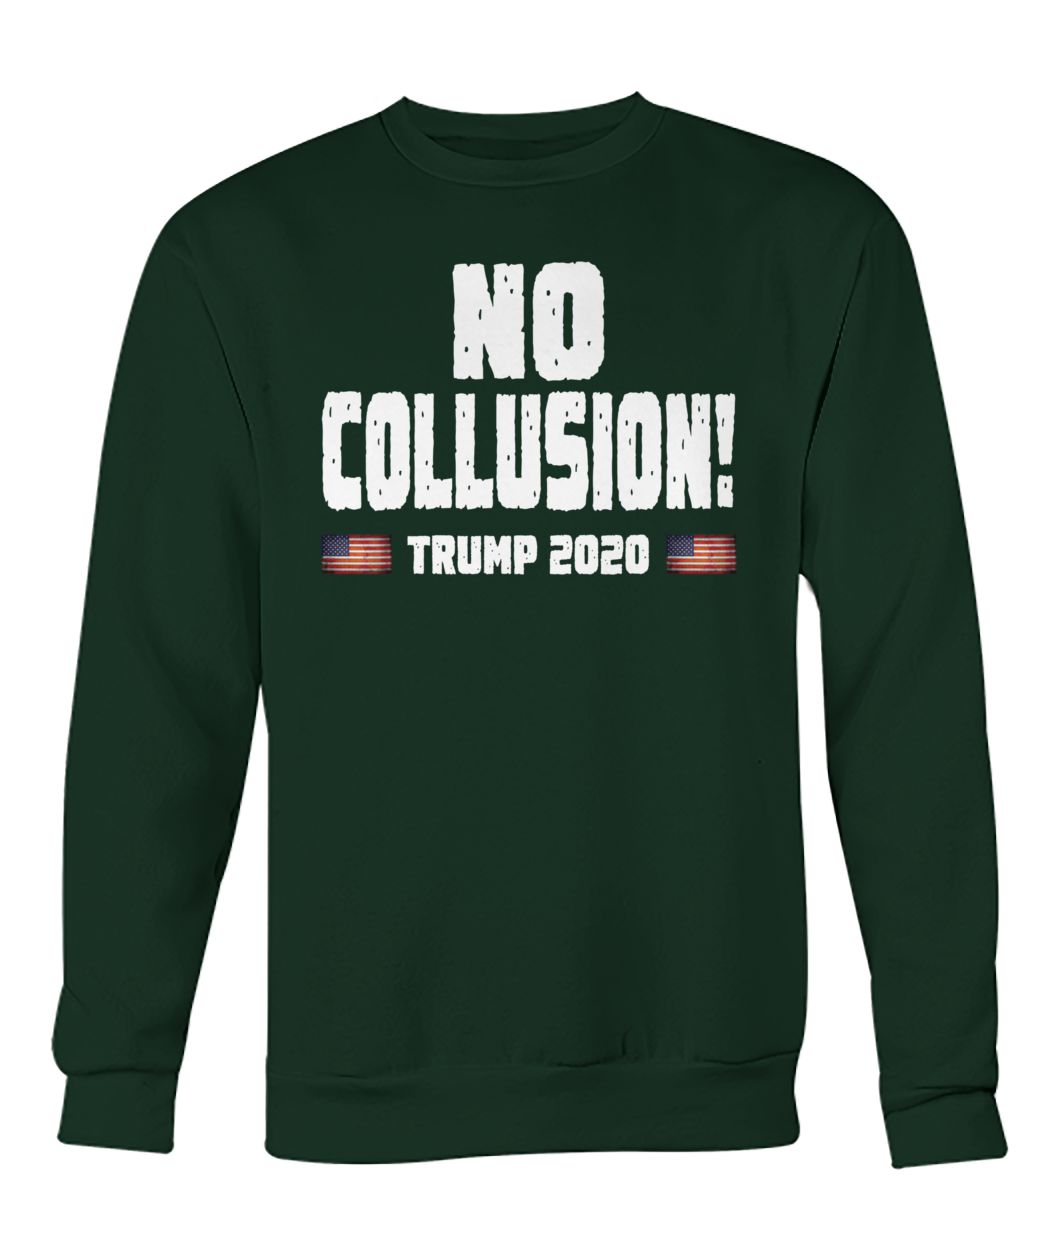 No collusion trump 2020 crew neck sweatshirt